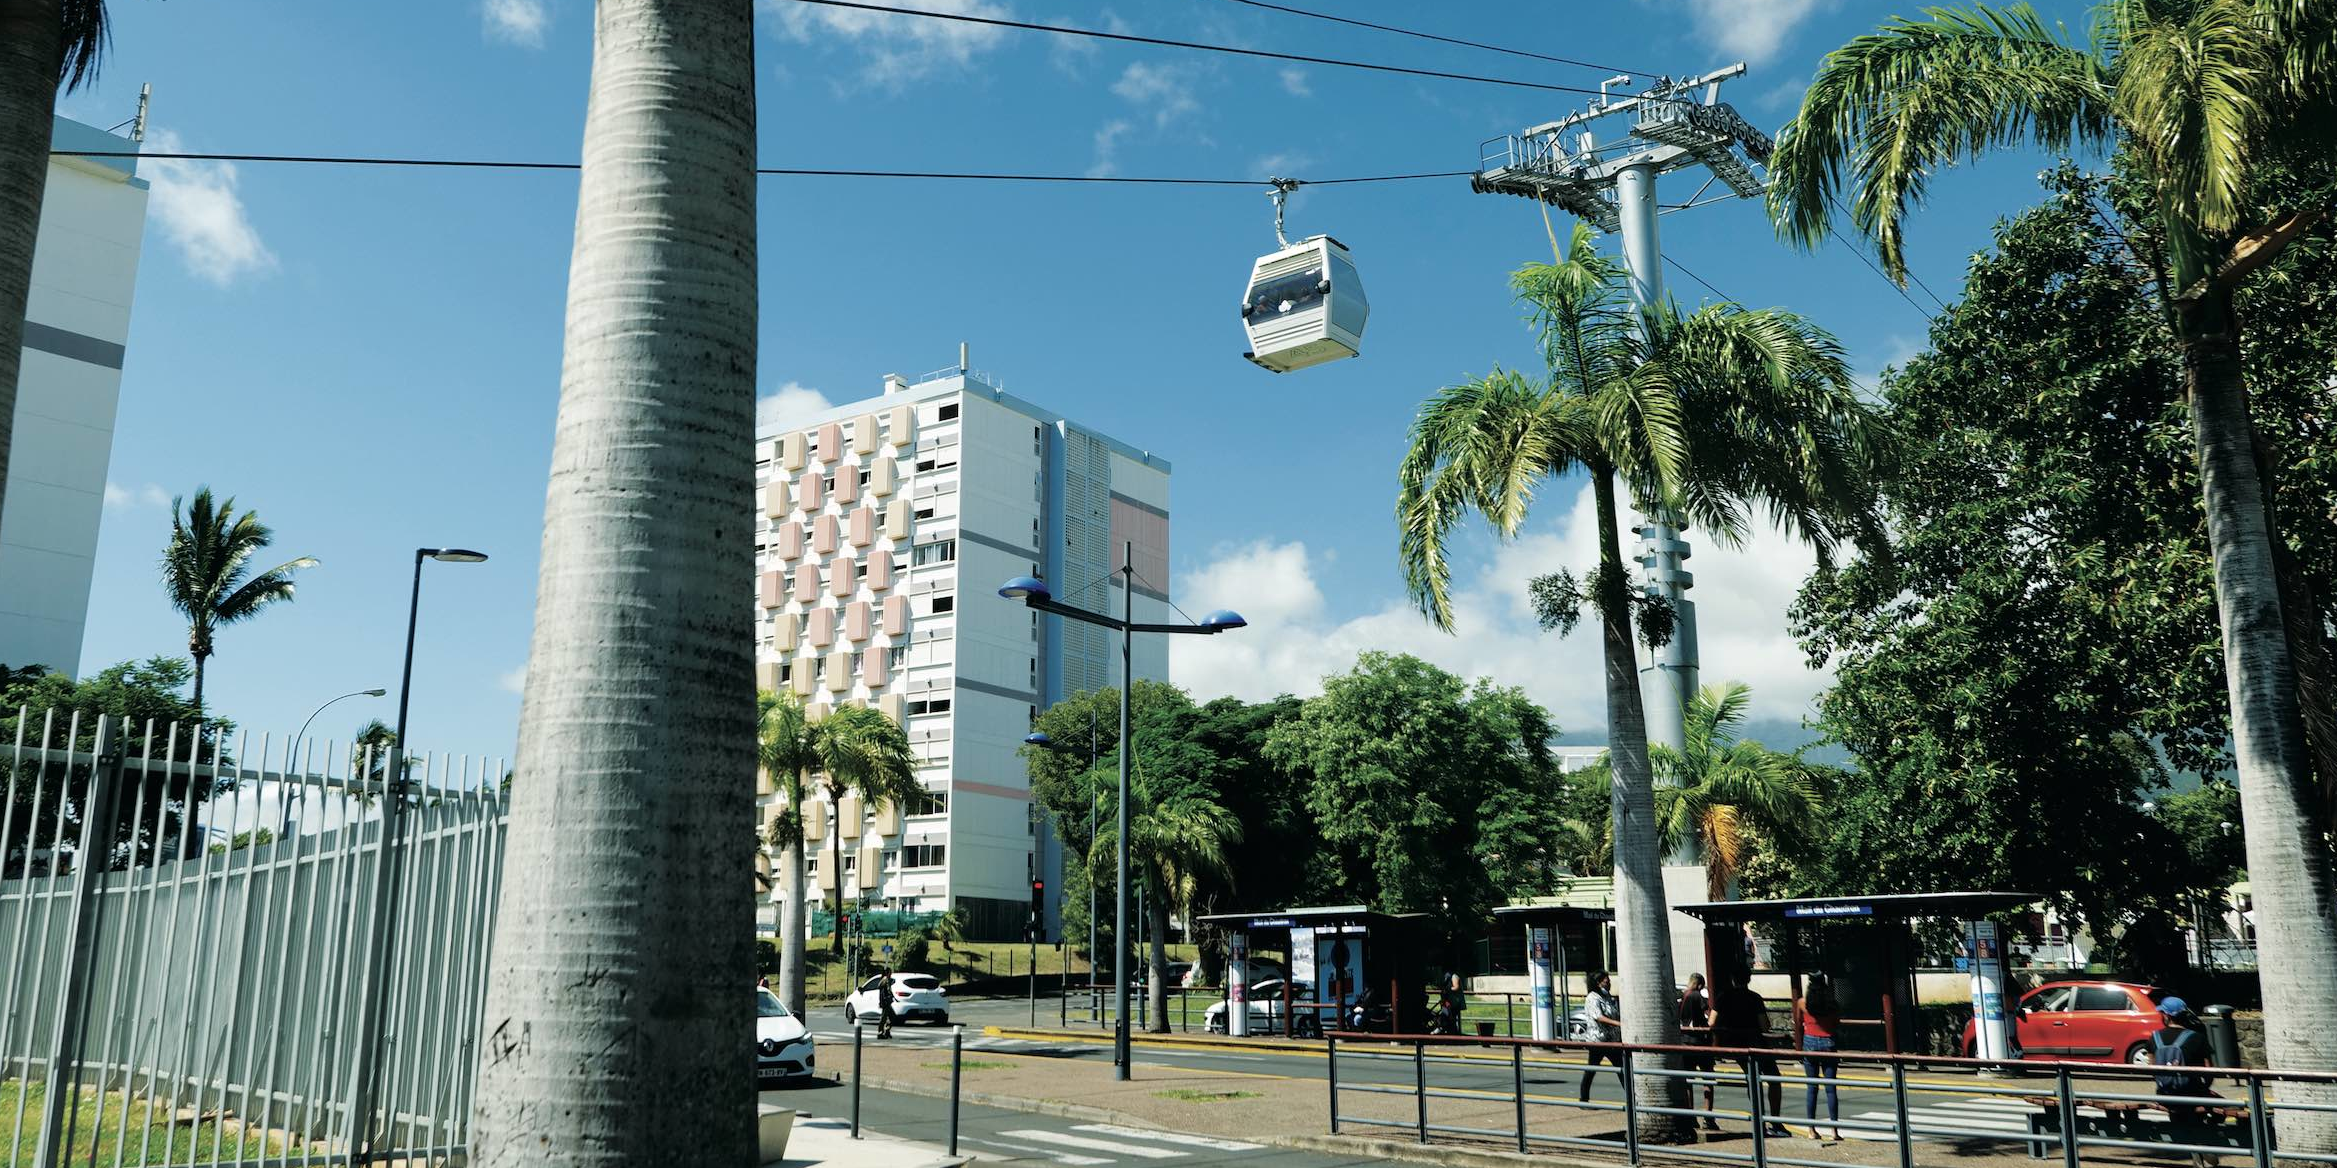 Transports urbains : les deux industriels Michelin et Poma s'allient pour imaginer les rouages du câble du futur